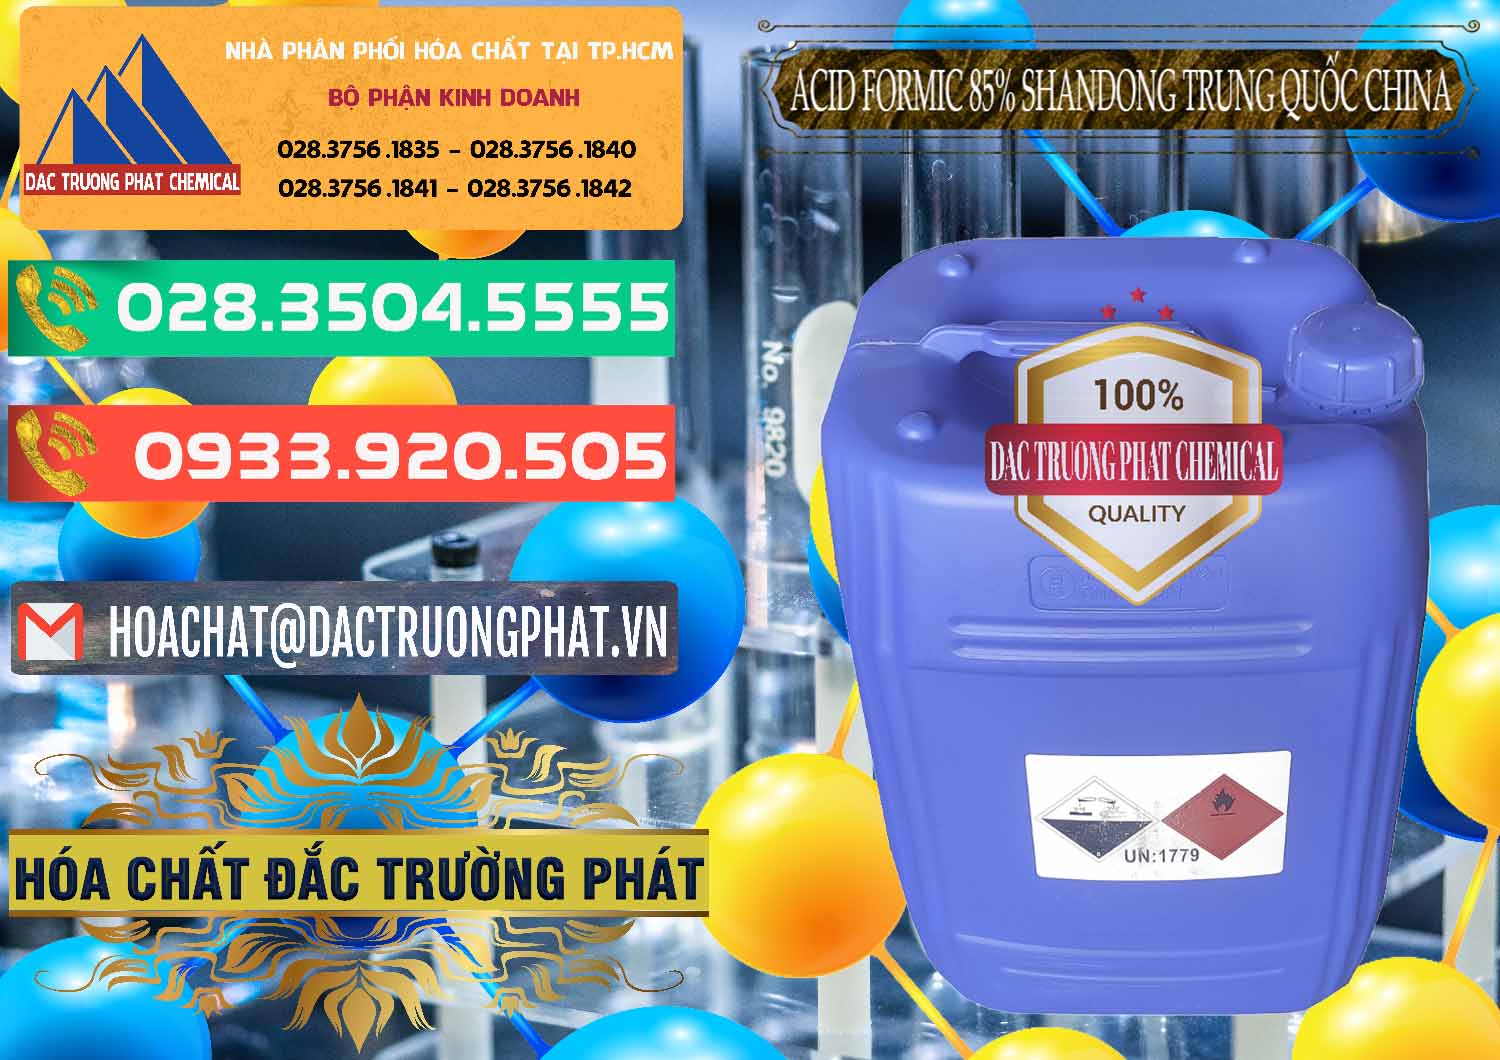 Công ty chuyên cung ứng _ bán Acid Formic - Axit Formic 85% Shandong Trung Quốc China - 0235 - Đơn vị chuyên phân phối - bán hóa chất tại TP.HCM - congtyhoachat.com.vn